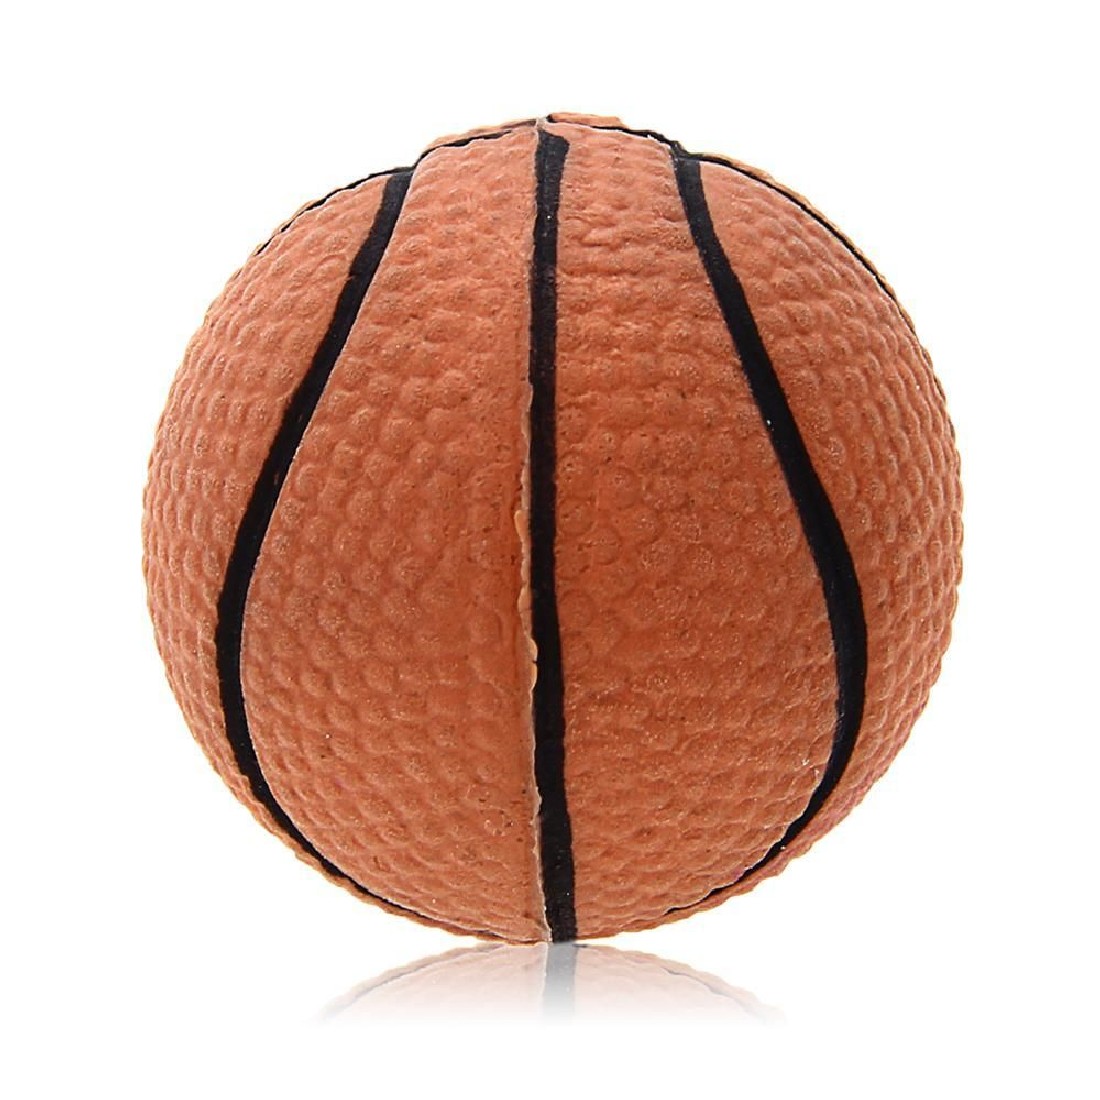 bouncy ball basketball